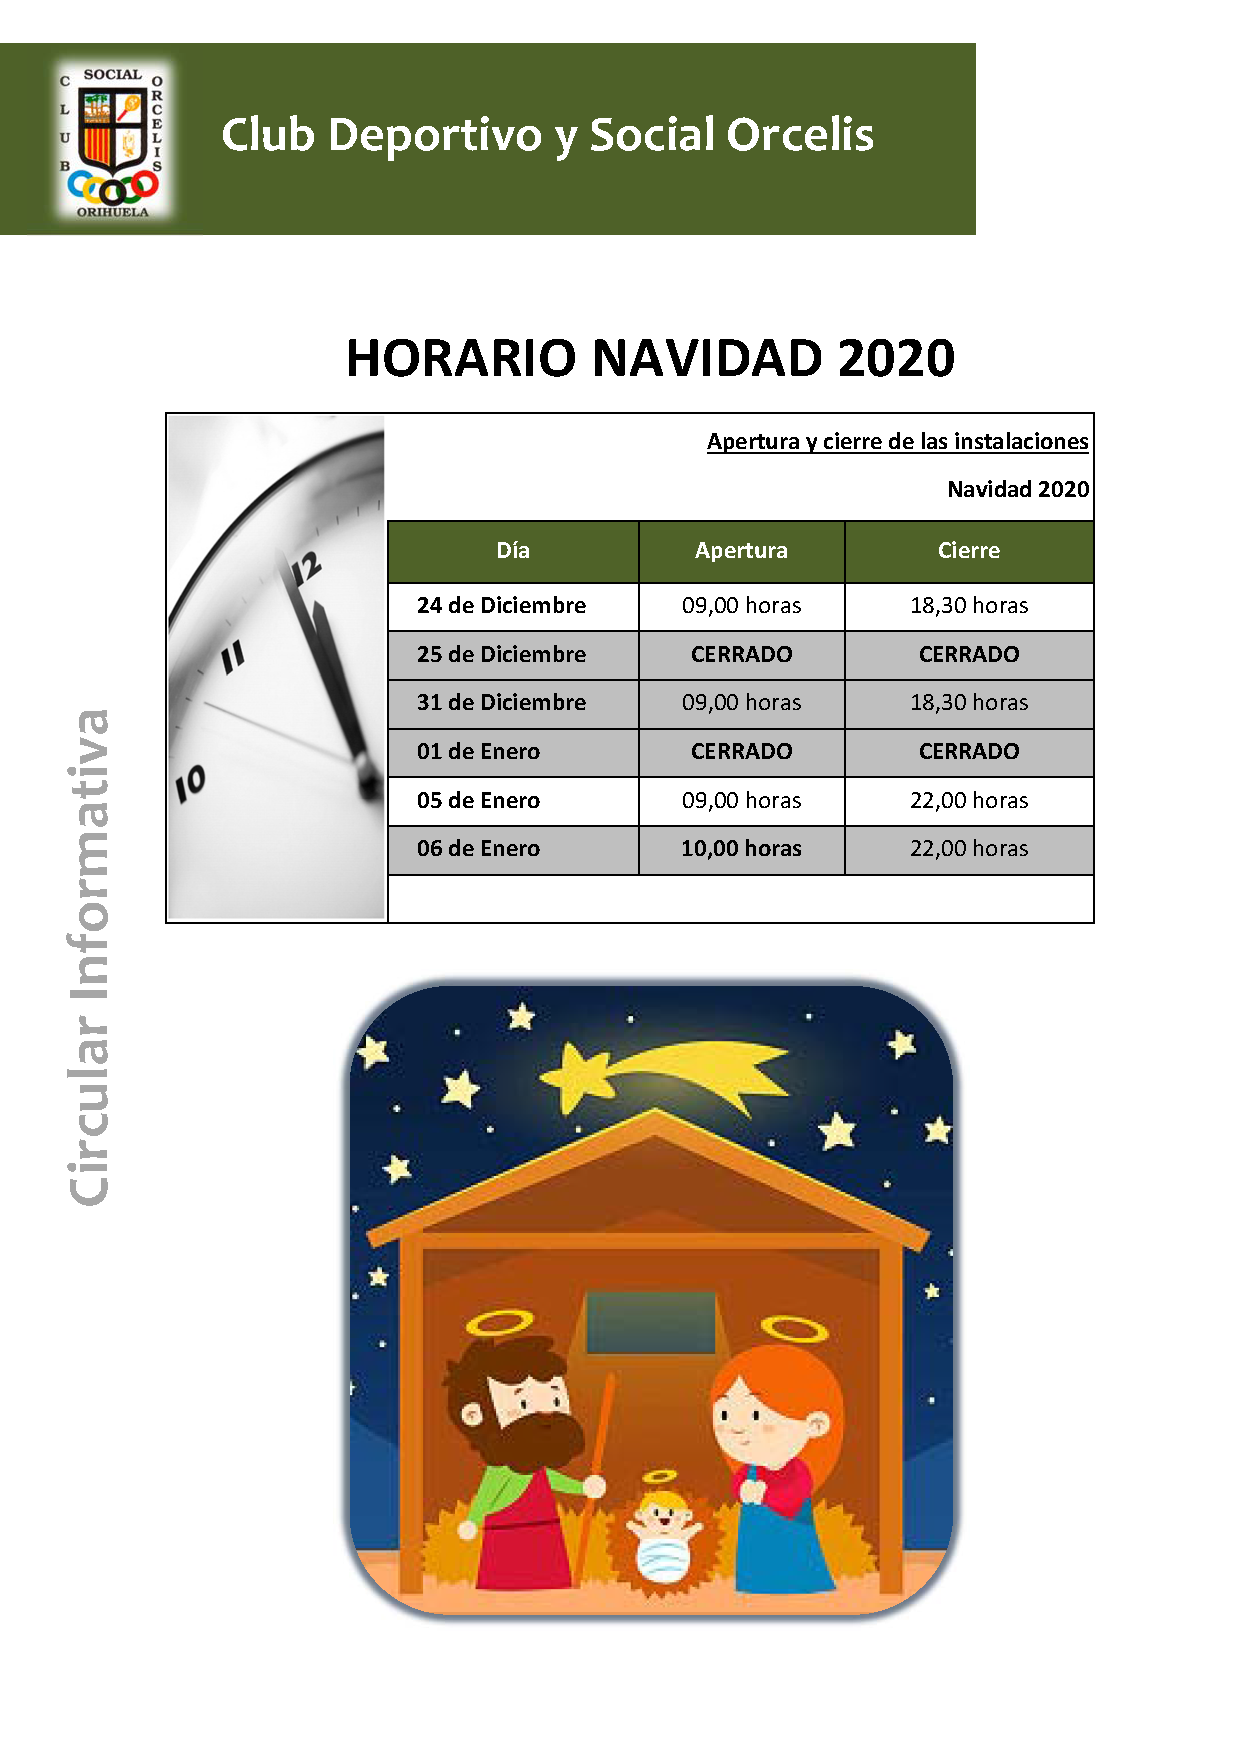 HORARIO DE NAVIDAD